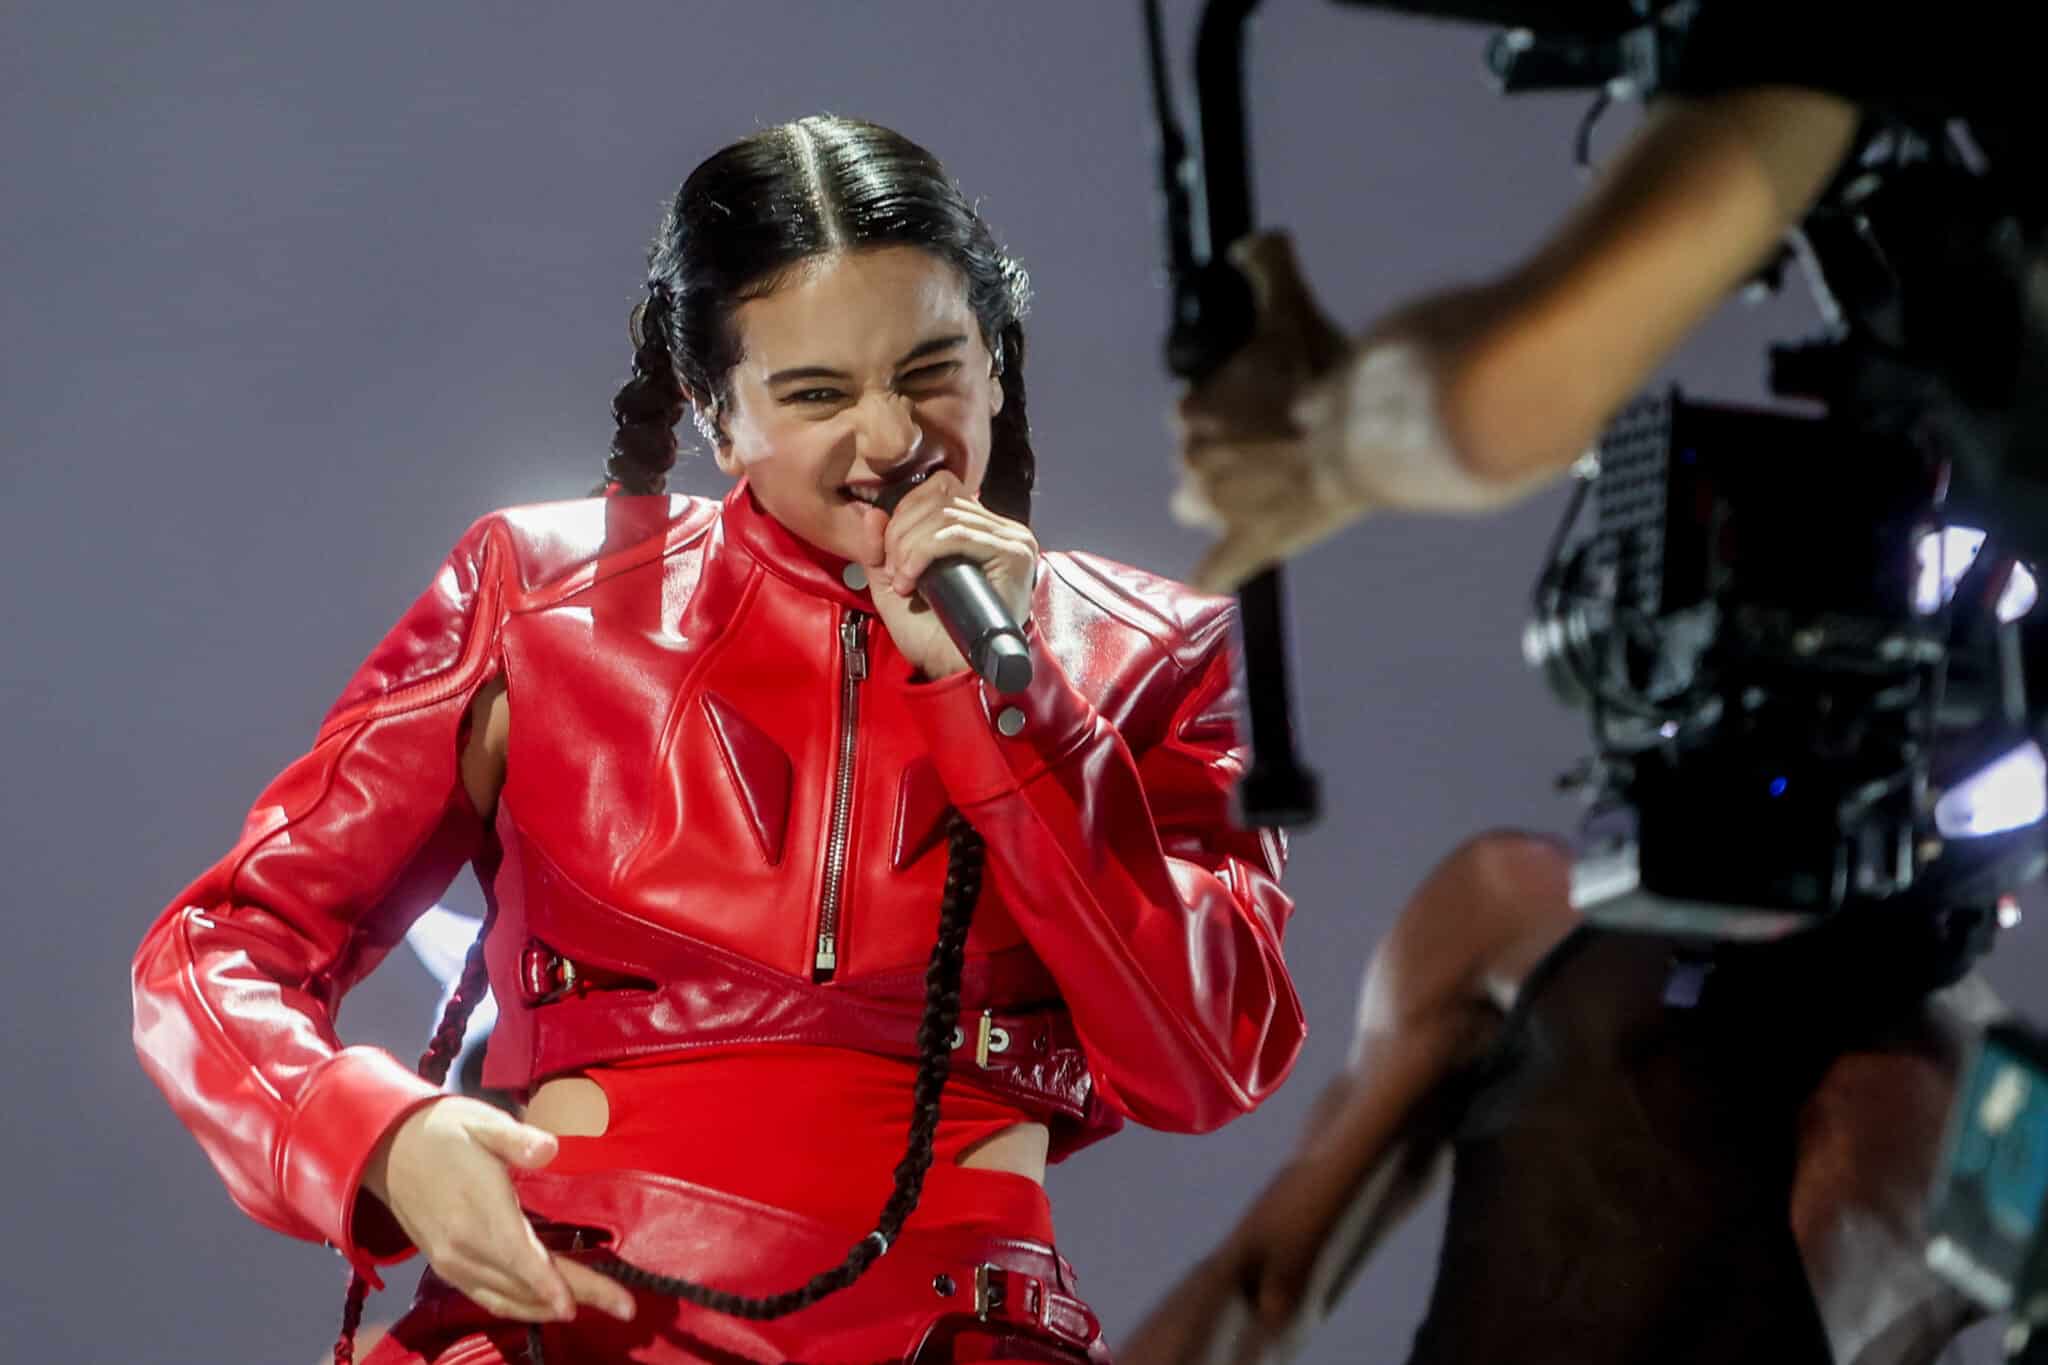 Rosalía celebra su 30 cumpleaños como auténtica 'Motomami': del "tu no vales" a nominada a 9 Grammy Latinos